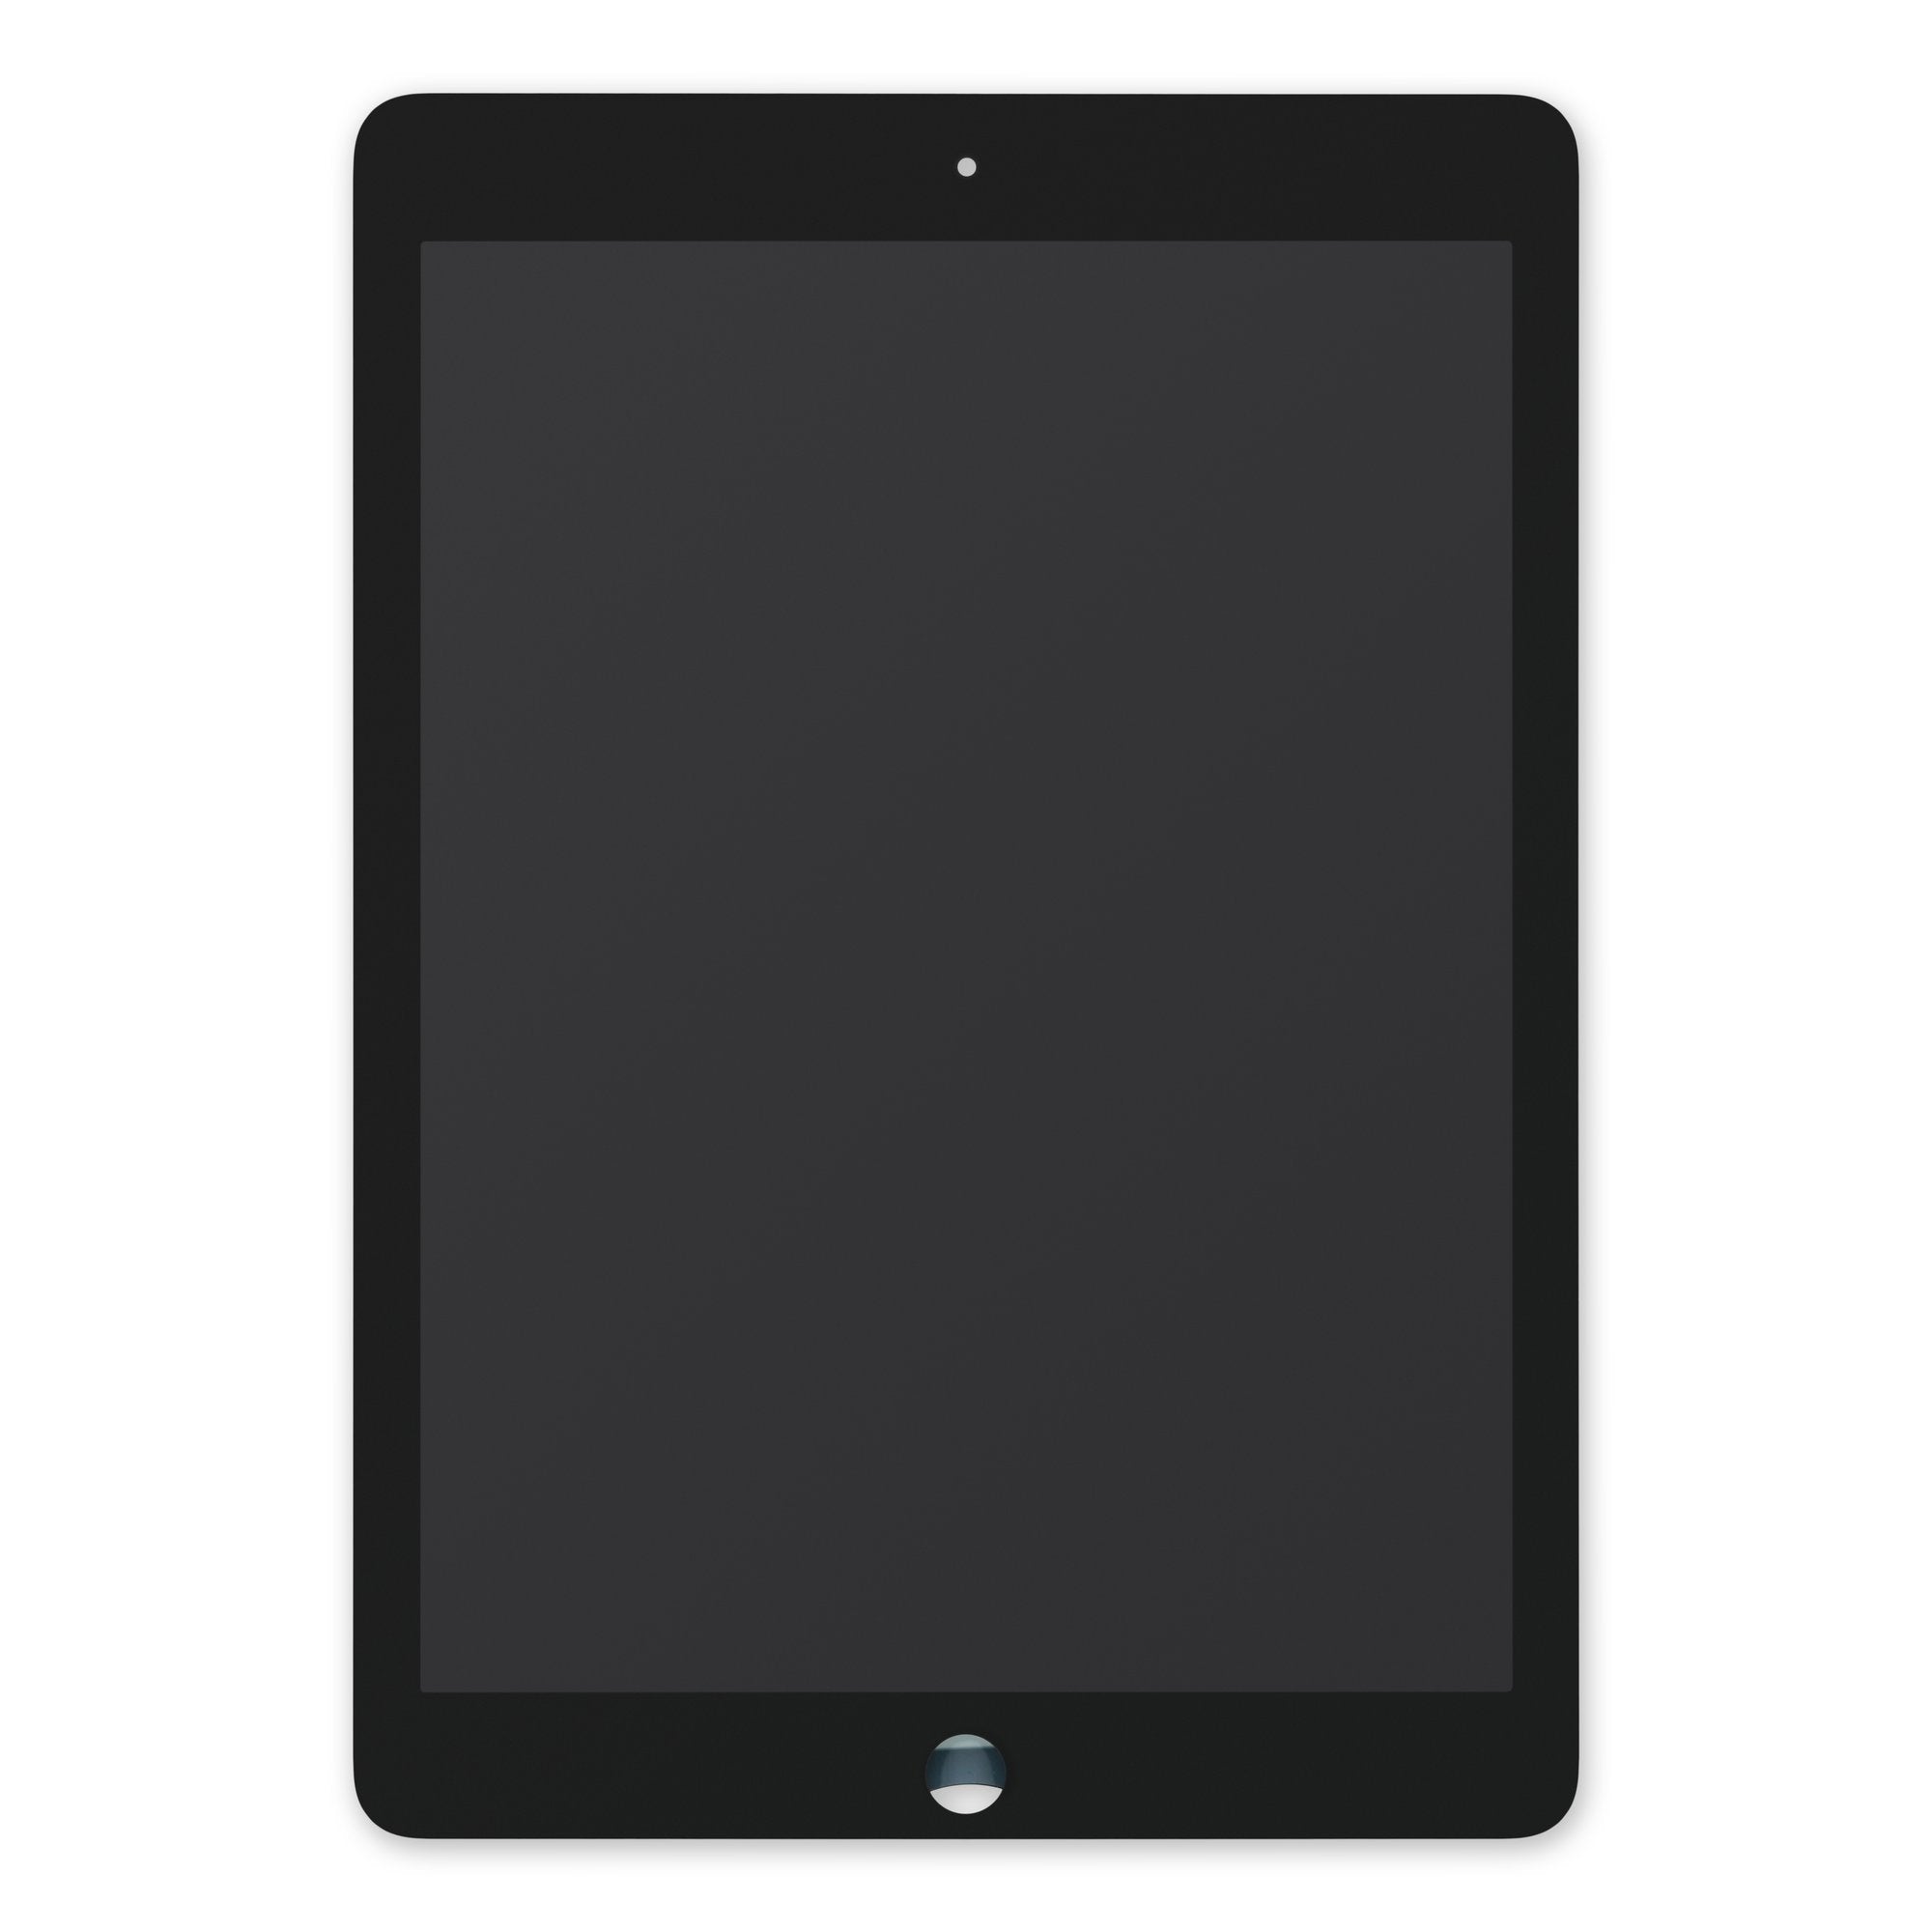 Bloc Ecran complet vitre tactile et LCD pour iPad Air 2 blanc